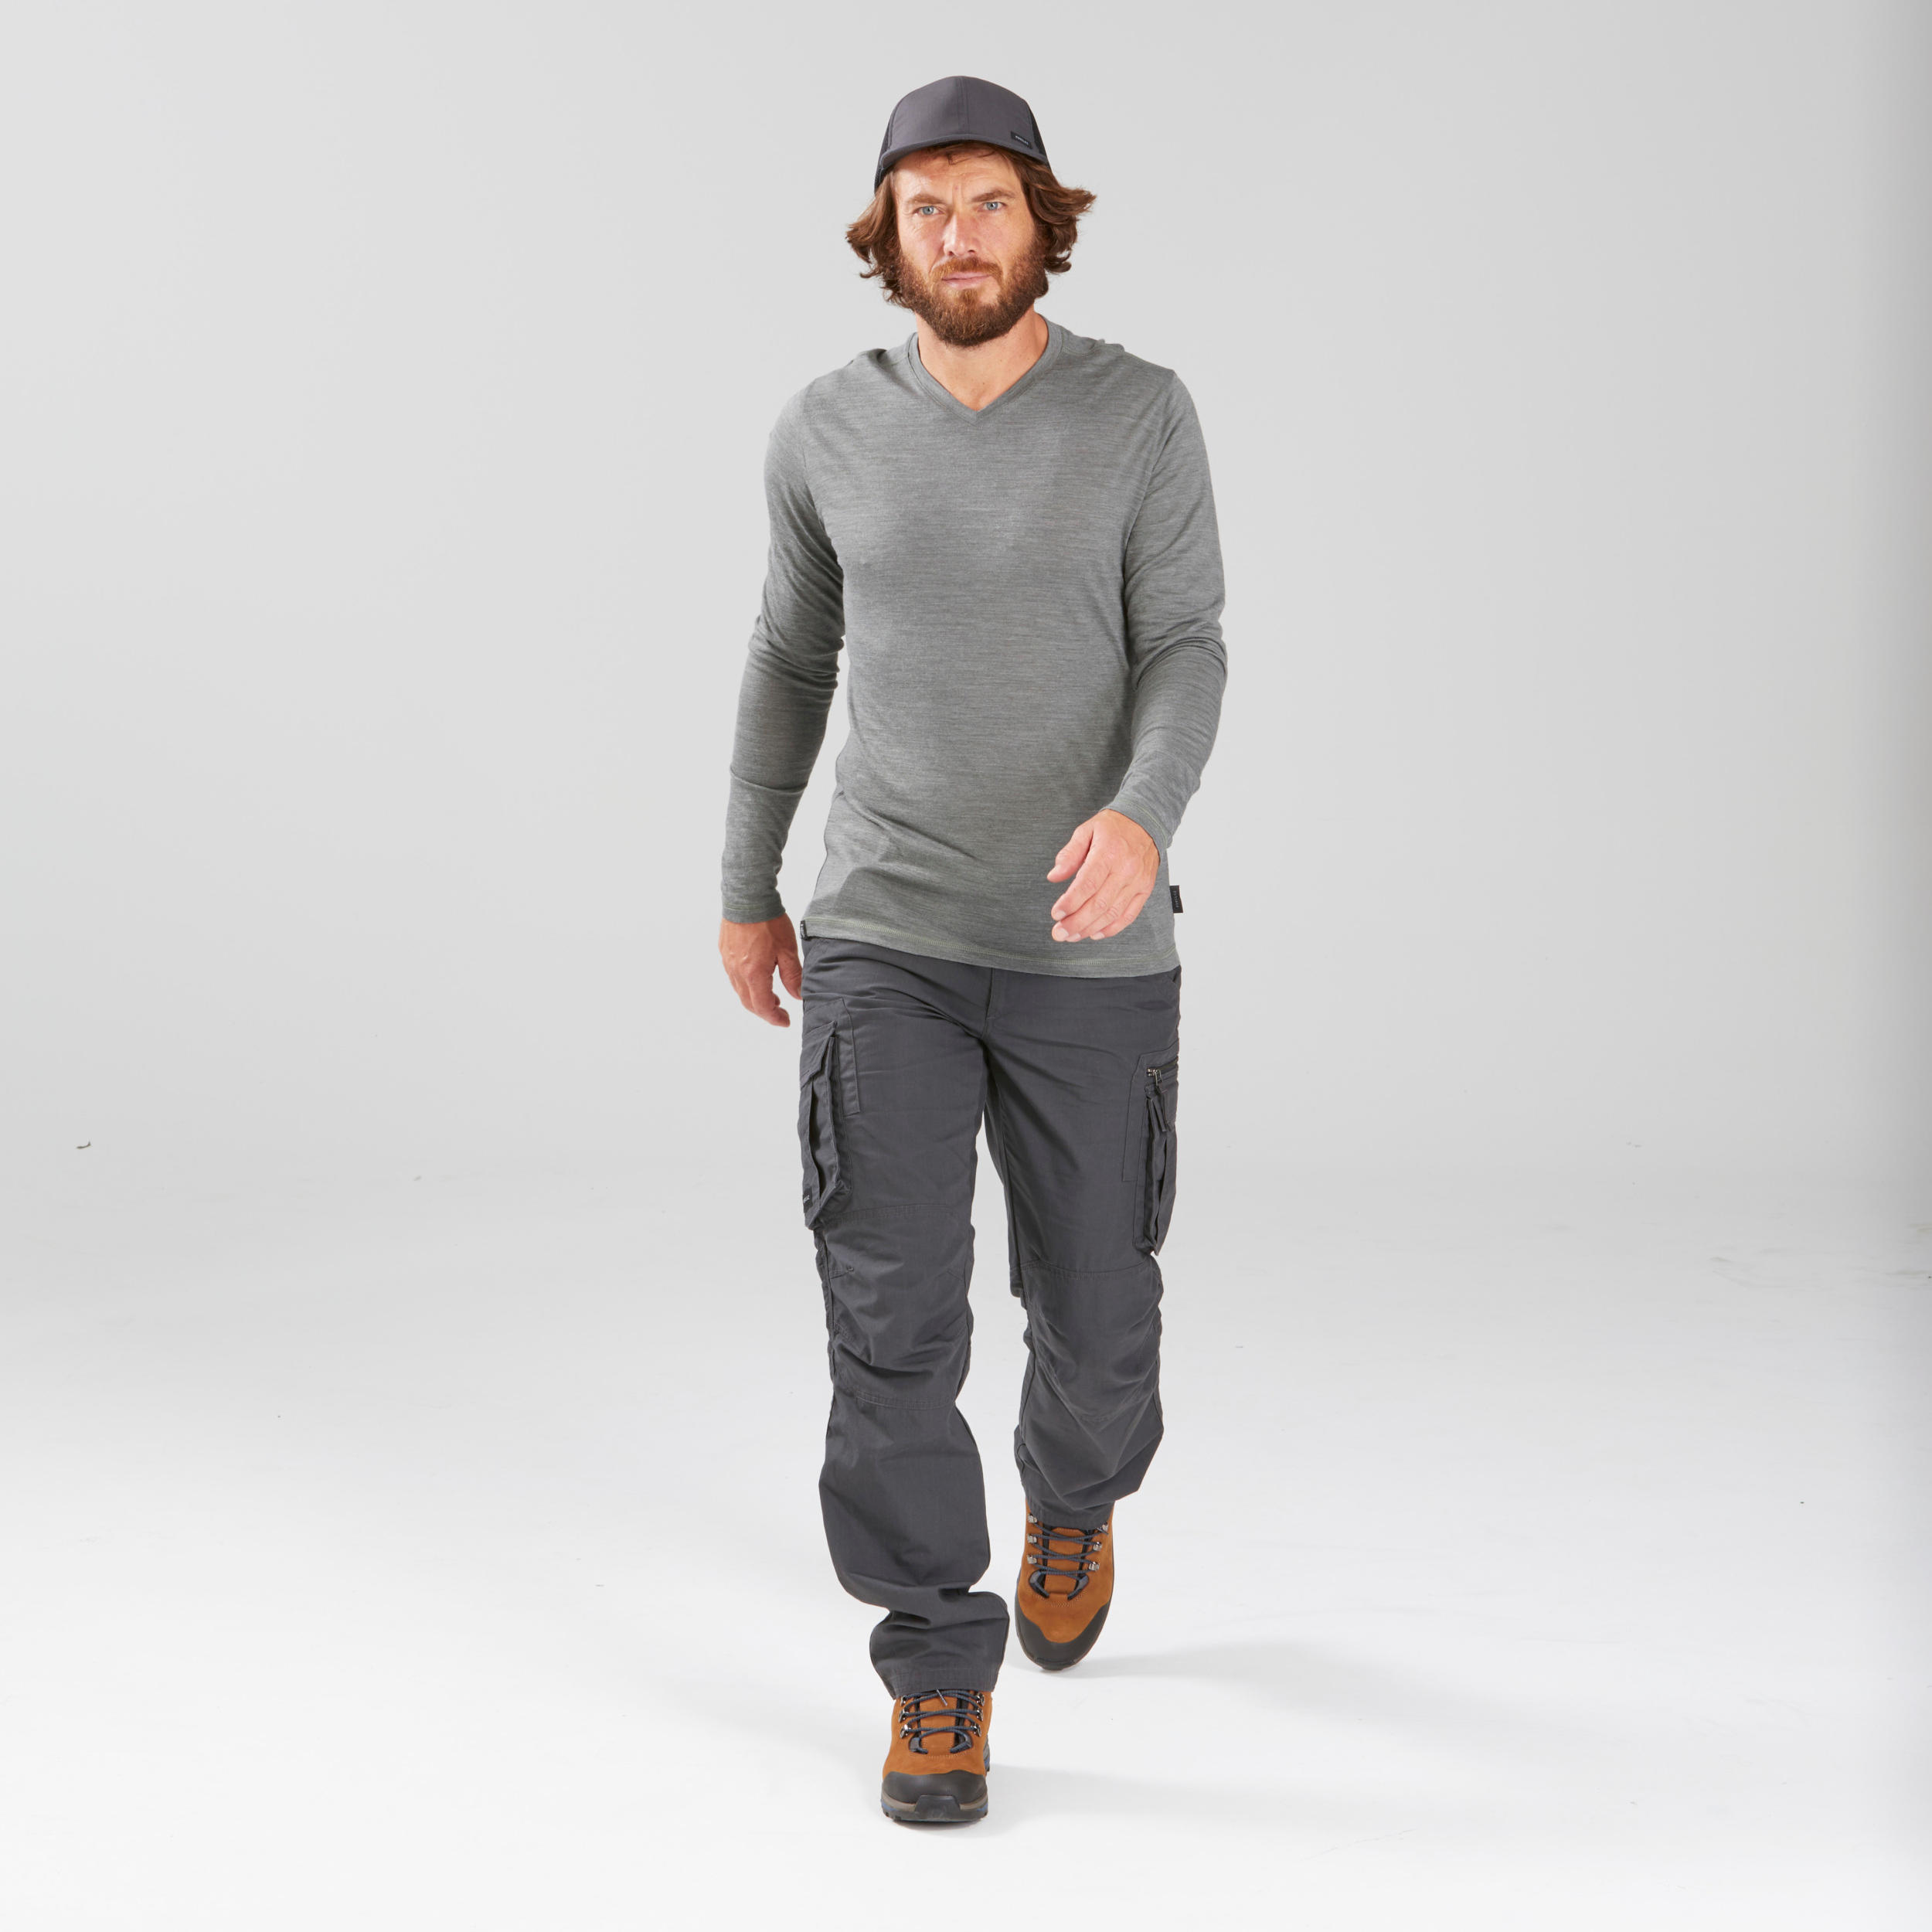 DECATHLON Cargo Shorts Camo size 33 | Clothes design, Fashion, Outfits